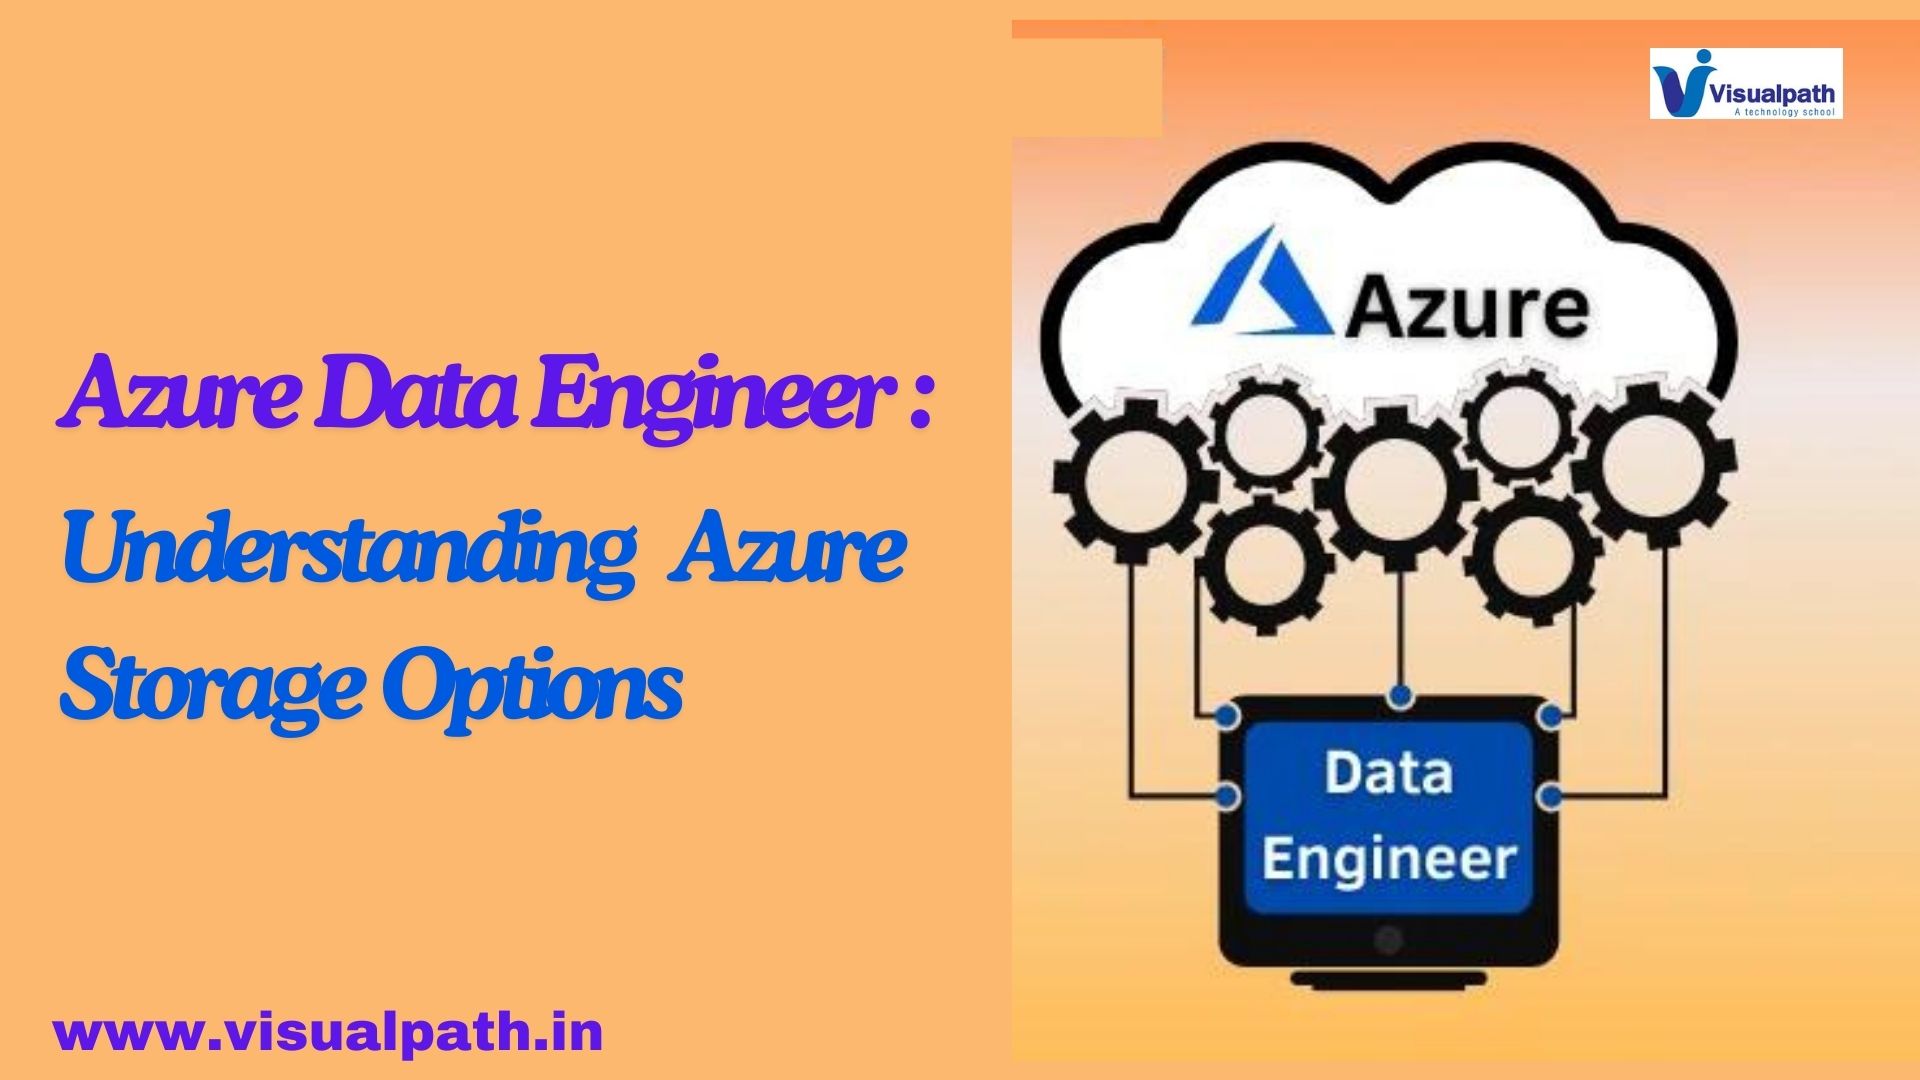 Azure Data Engineer: Understanding Azure Storage Options and Blob Storage